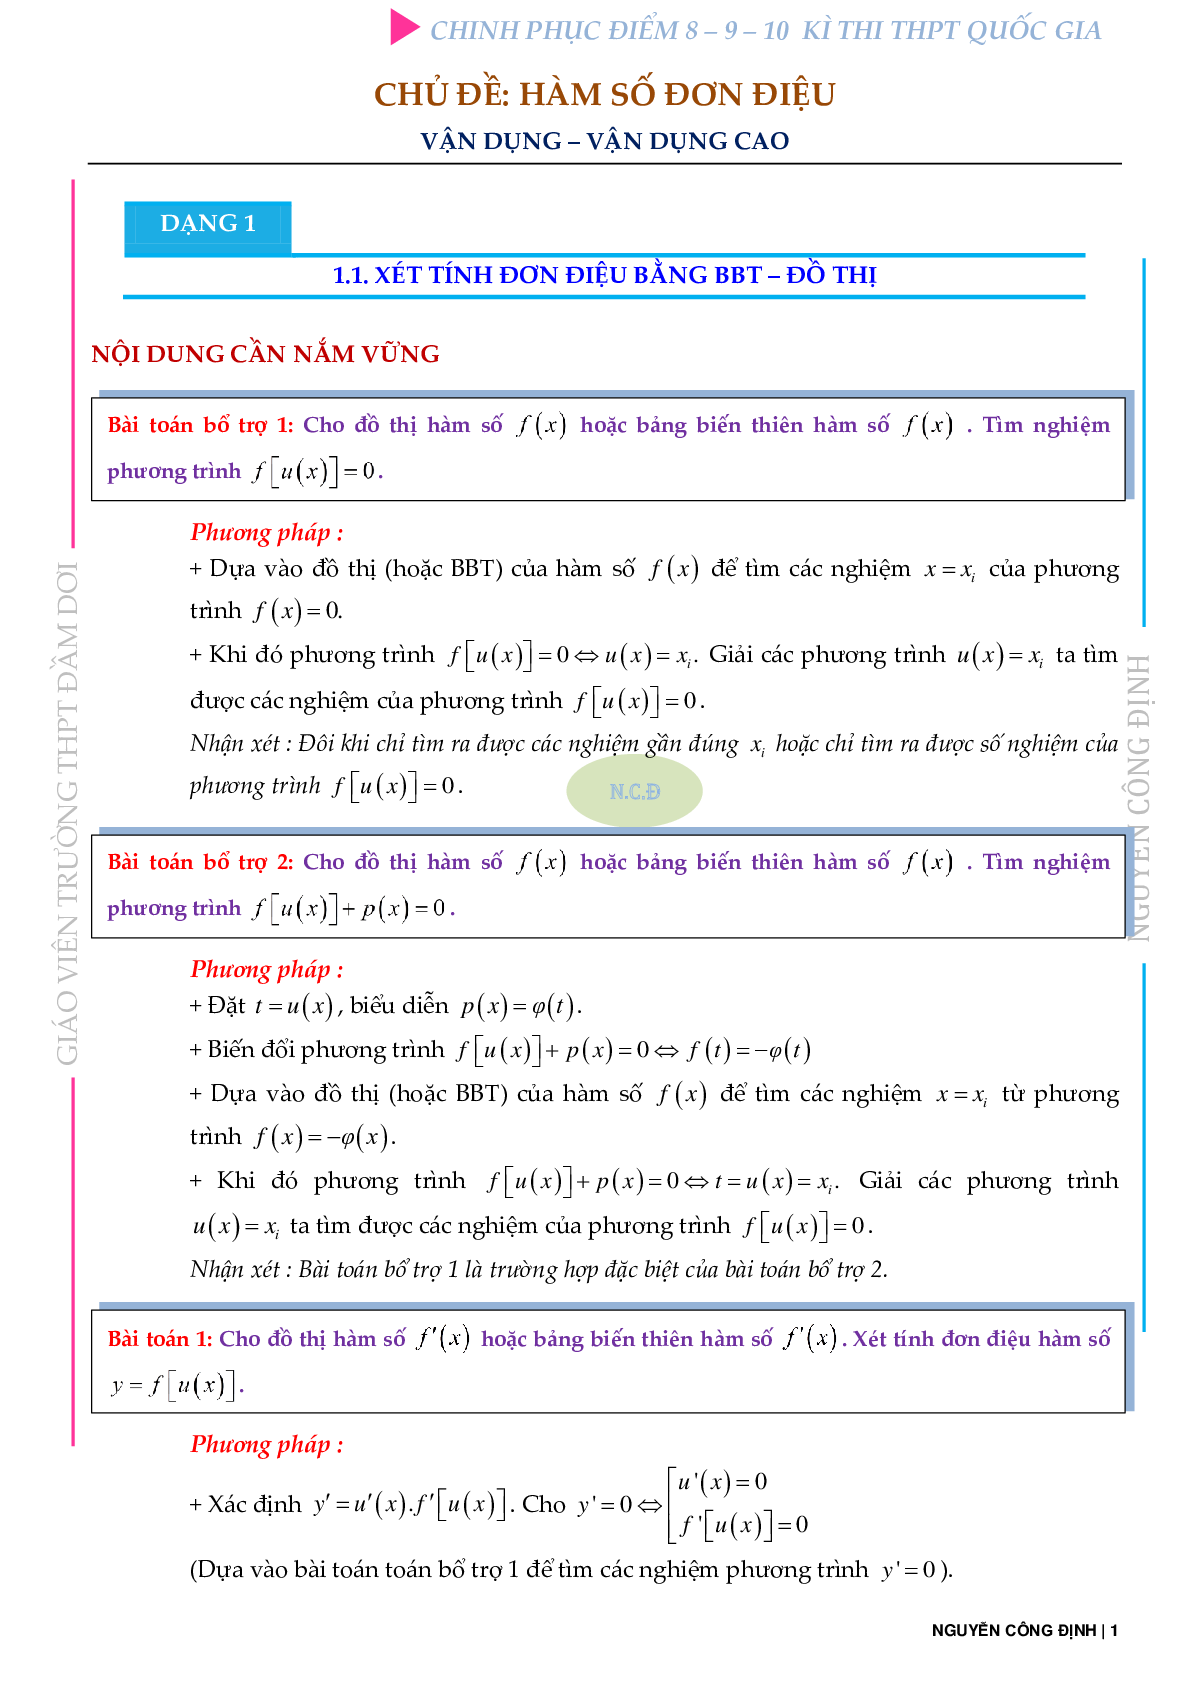 Bài toán VD – VDC về tính đơn điệu của hàm số (trang 1)